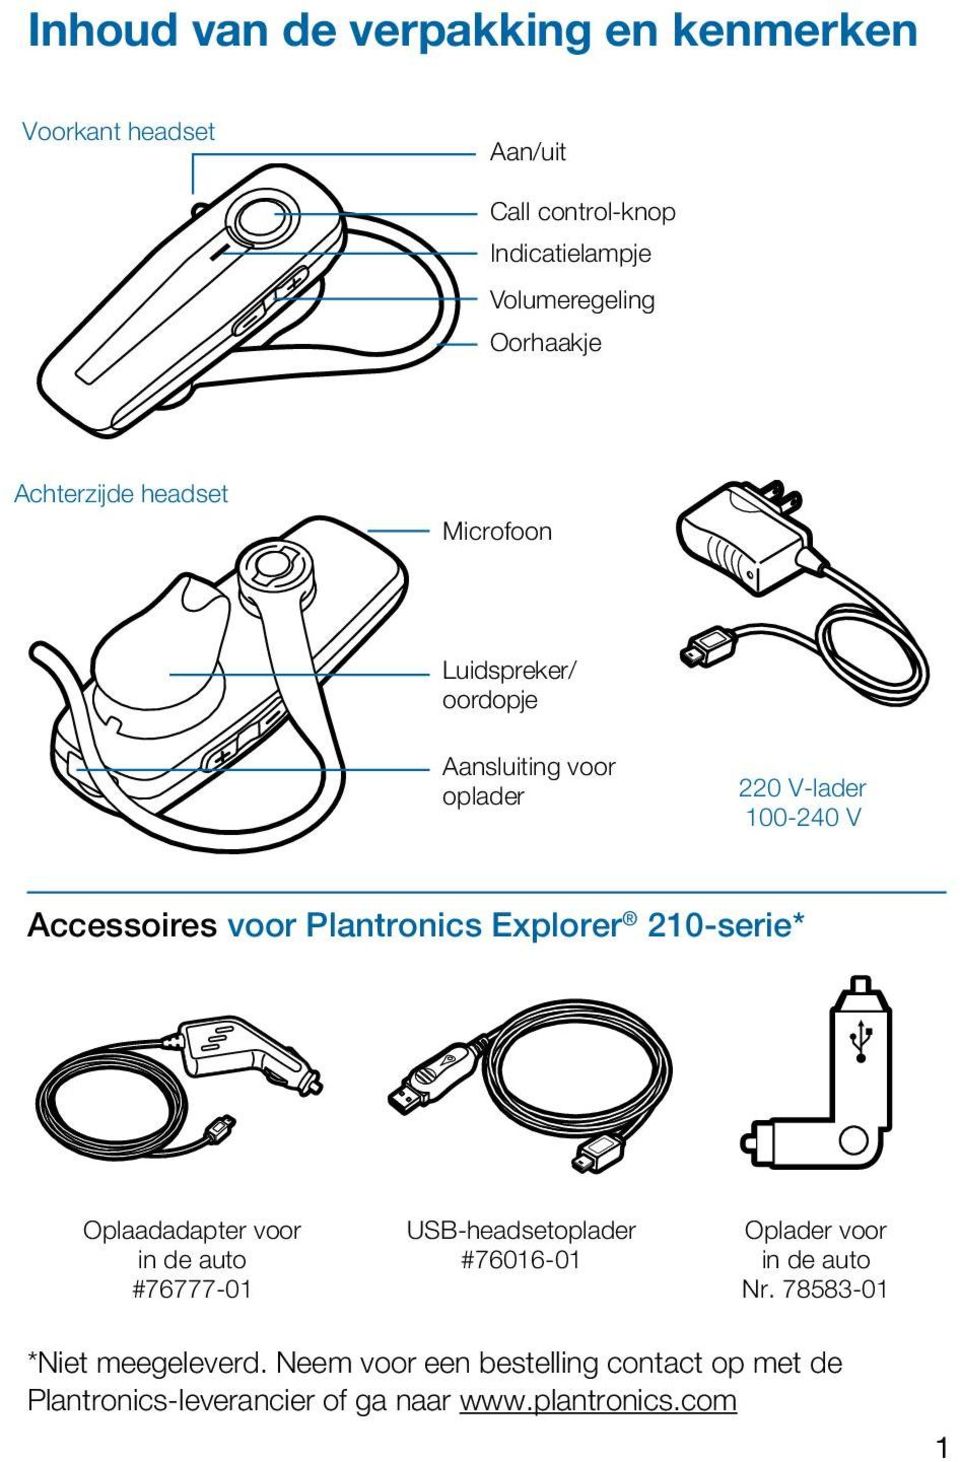 Plantronics Explorer 210-serie* Oplaadadapter voor in de auto #76777-01 USB-headsetoplader #76016-01 Oplader voor in de